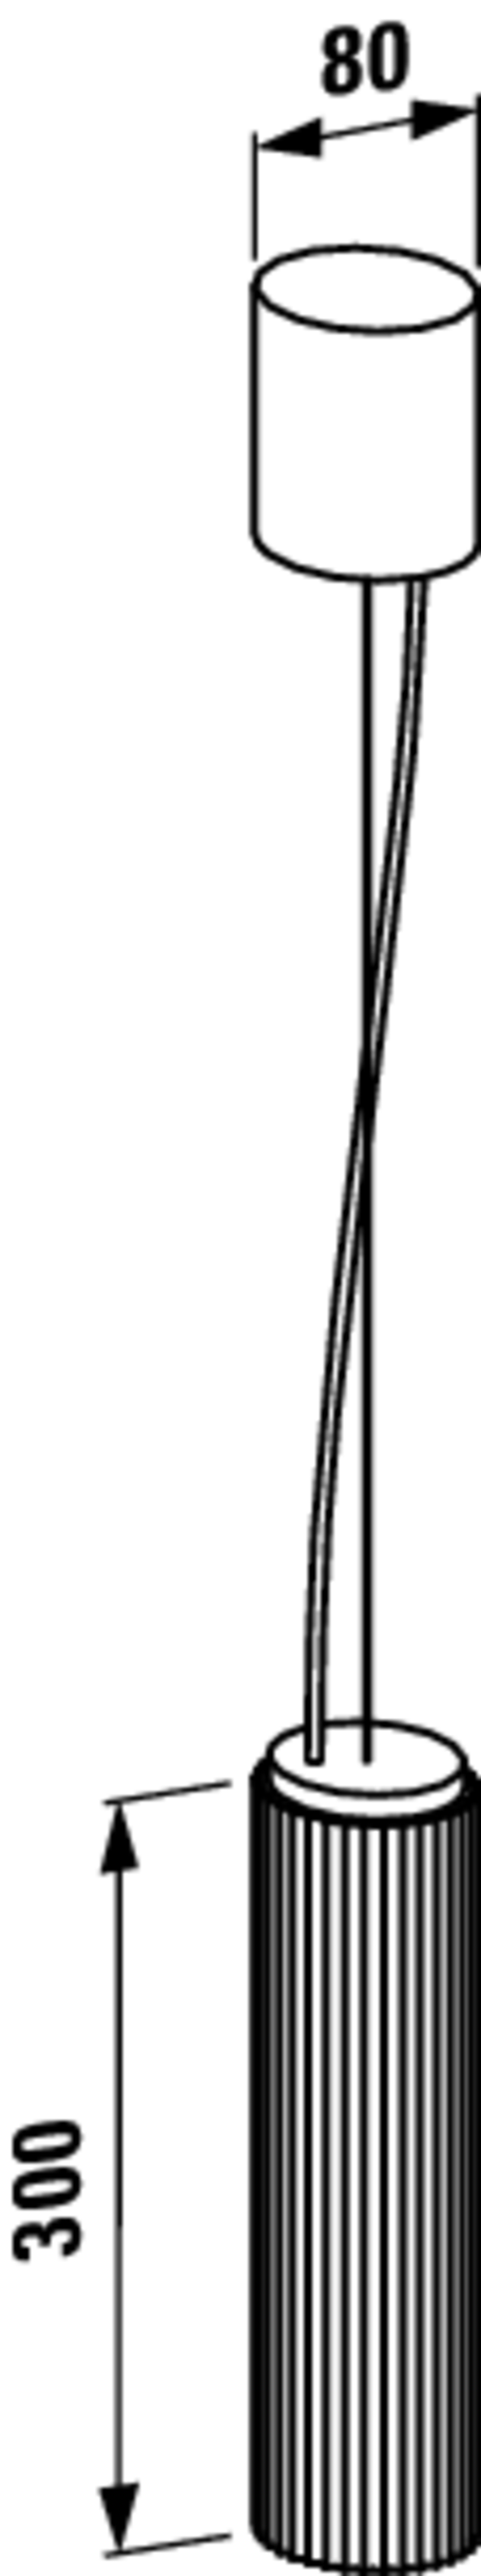 Lampa wisząca 30 cm Laufen Kartell rysunek techniczny